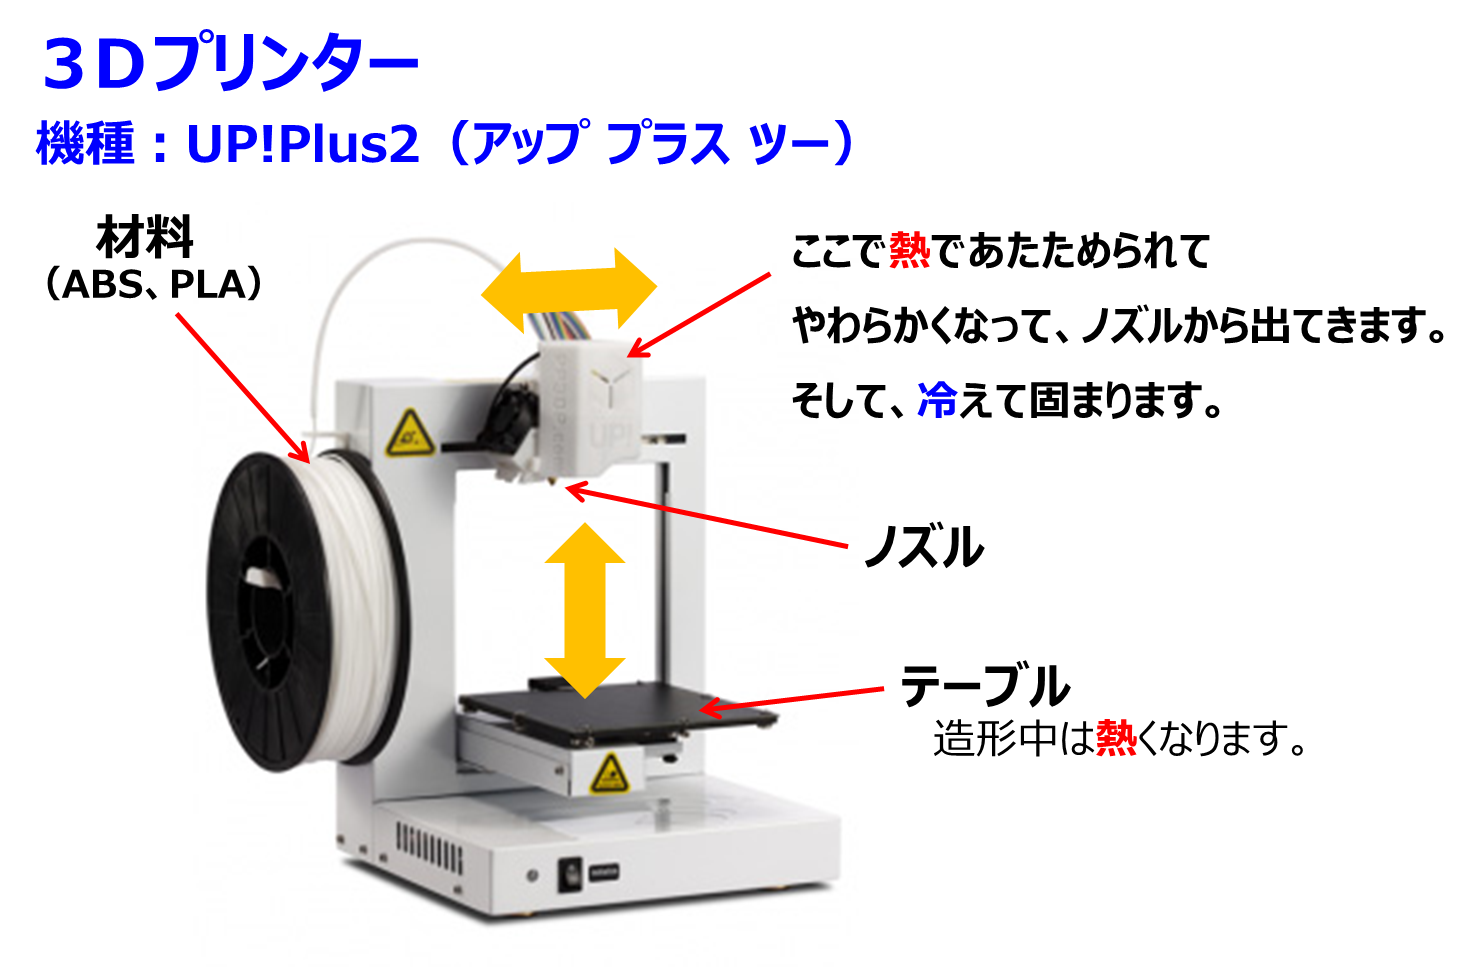 UP Plus2 3Dプリンター(白) - labaleinemarseille.com